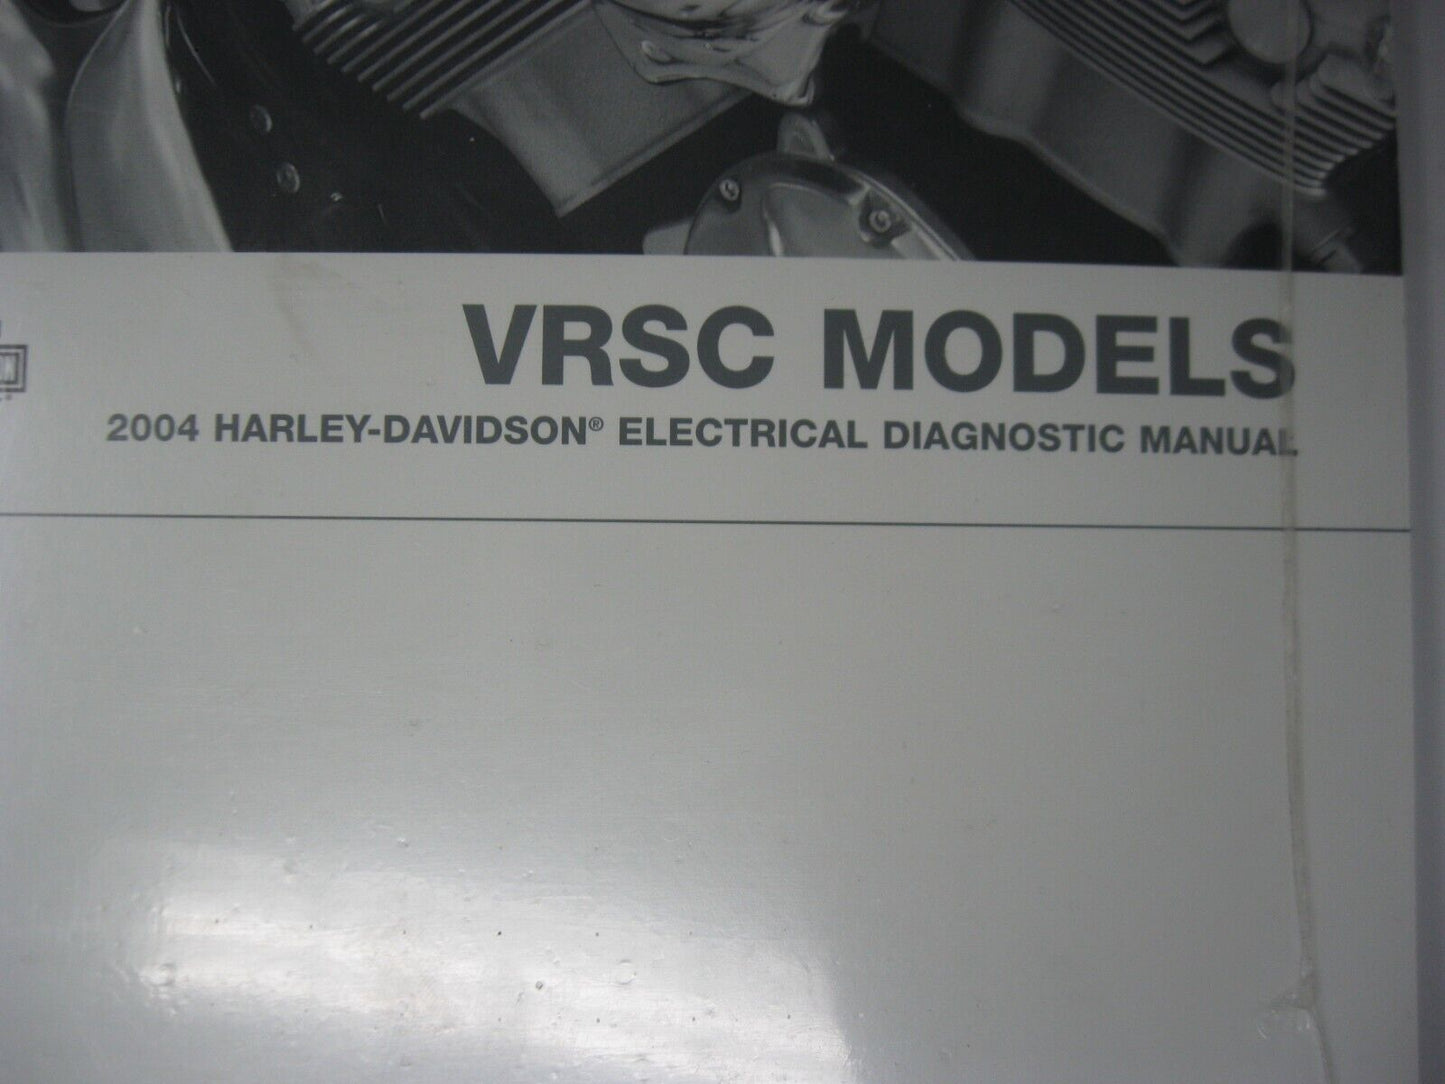 Harley-Davidson VRSC Models 2004 Electrical Diagnostic Manual 99499-04